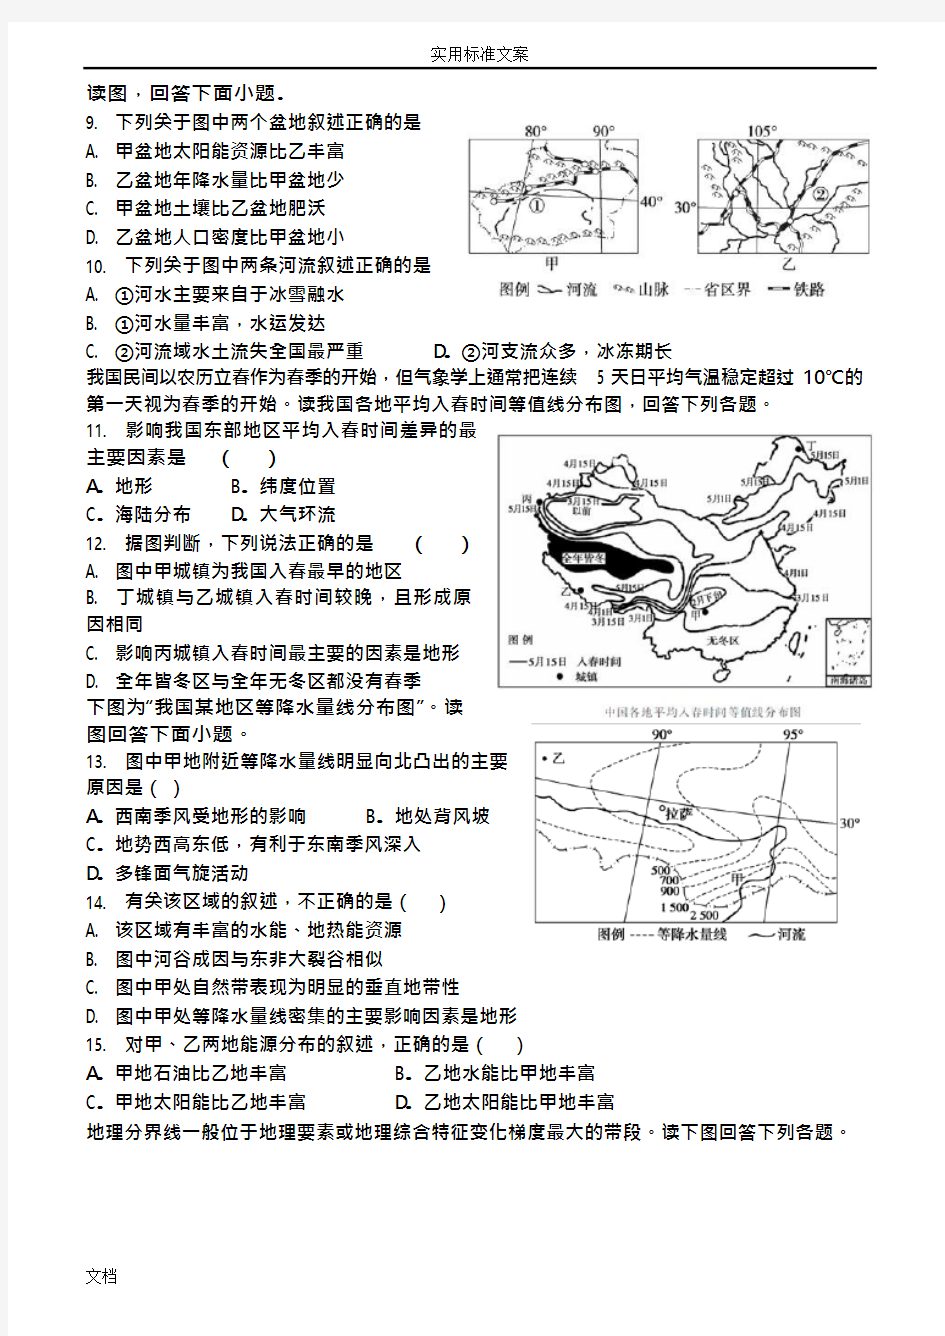 (完整版)高二区域地理中国地理地气候测试题(可编辑修改word版)